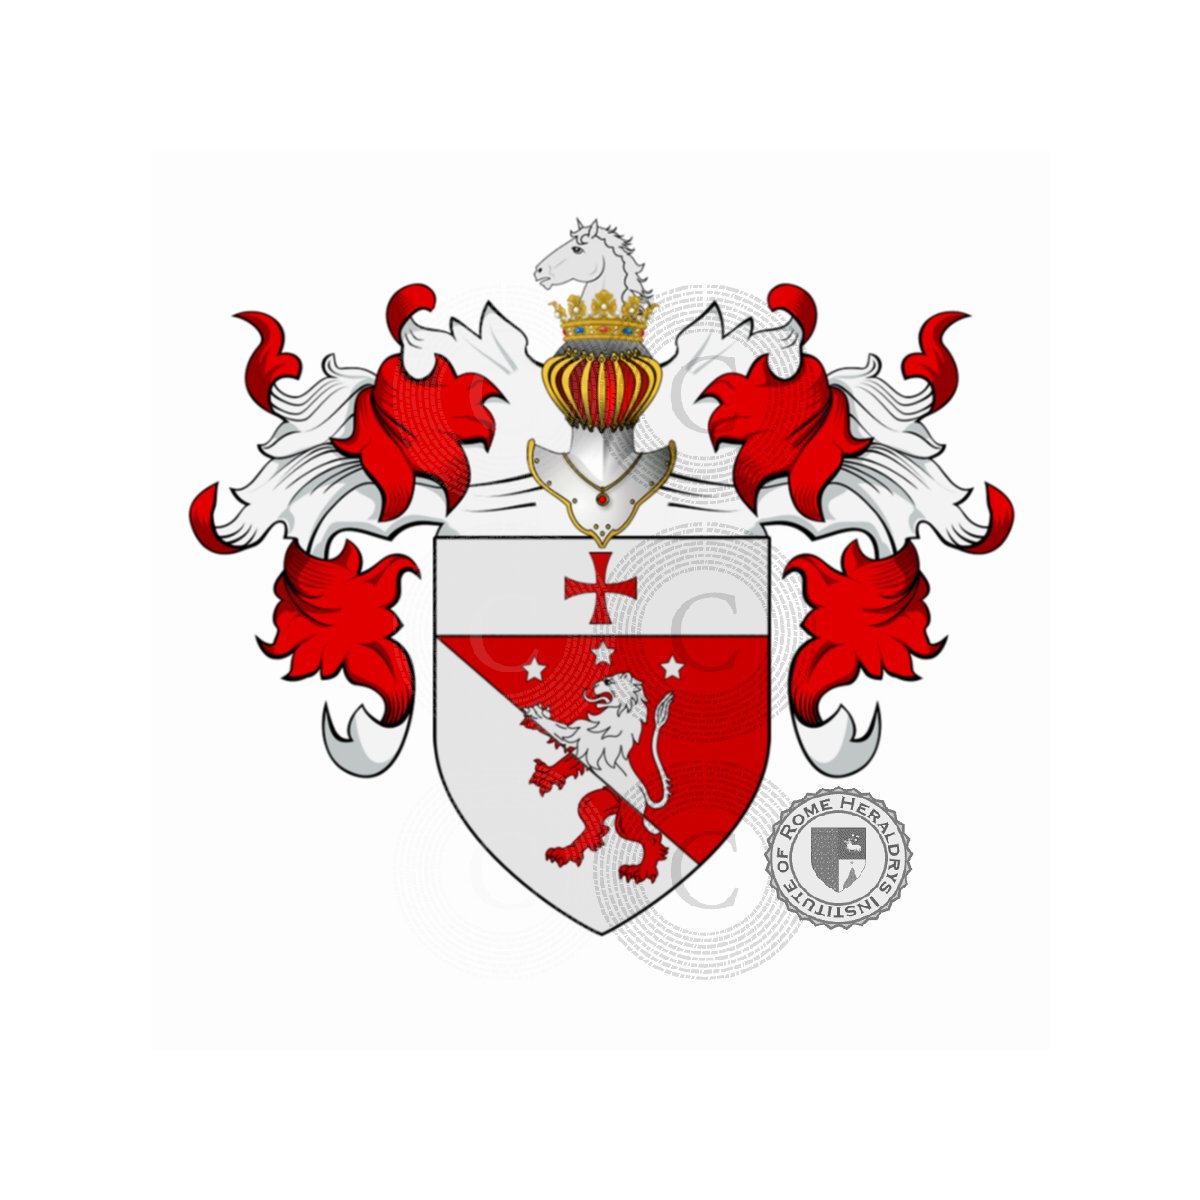 Wappen der FamilieAdelardi, Bulgari, Marcheselli o Marchesiello, Adelardi,Bulgari,Marchesello